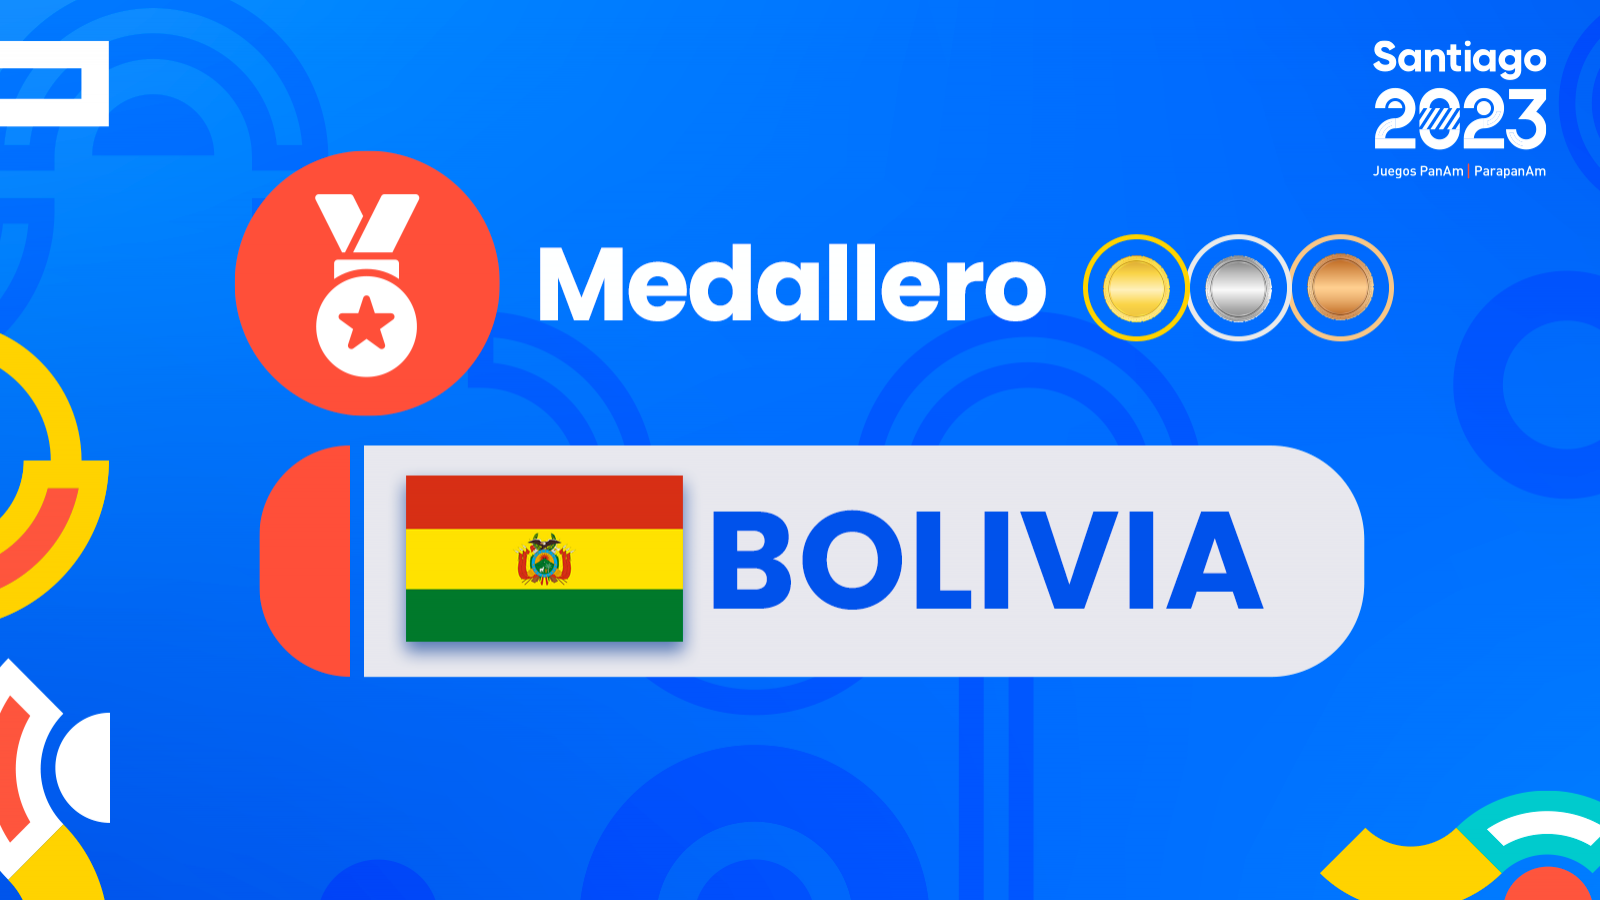 Medallas y medallero Bolivia juegos panamericanos Santiago 2023.